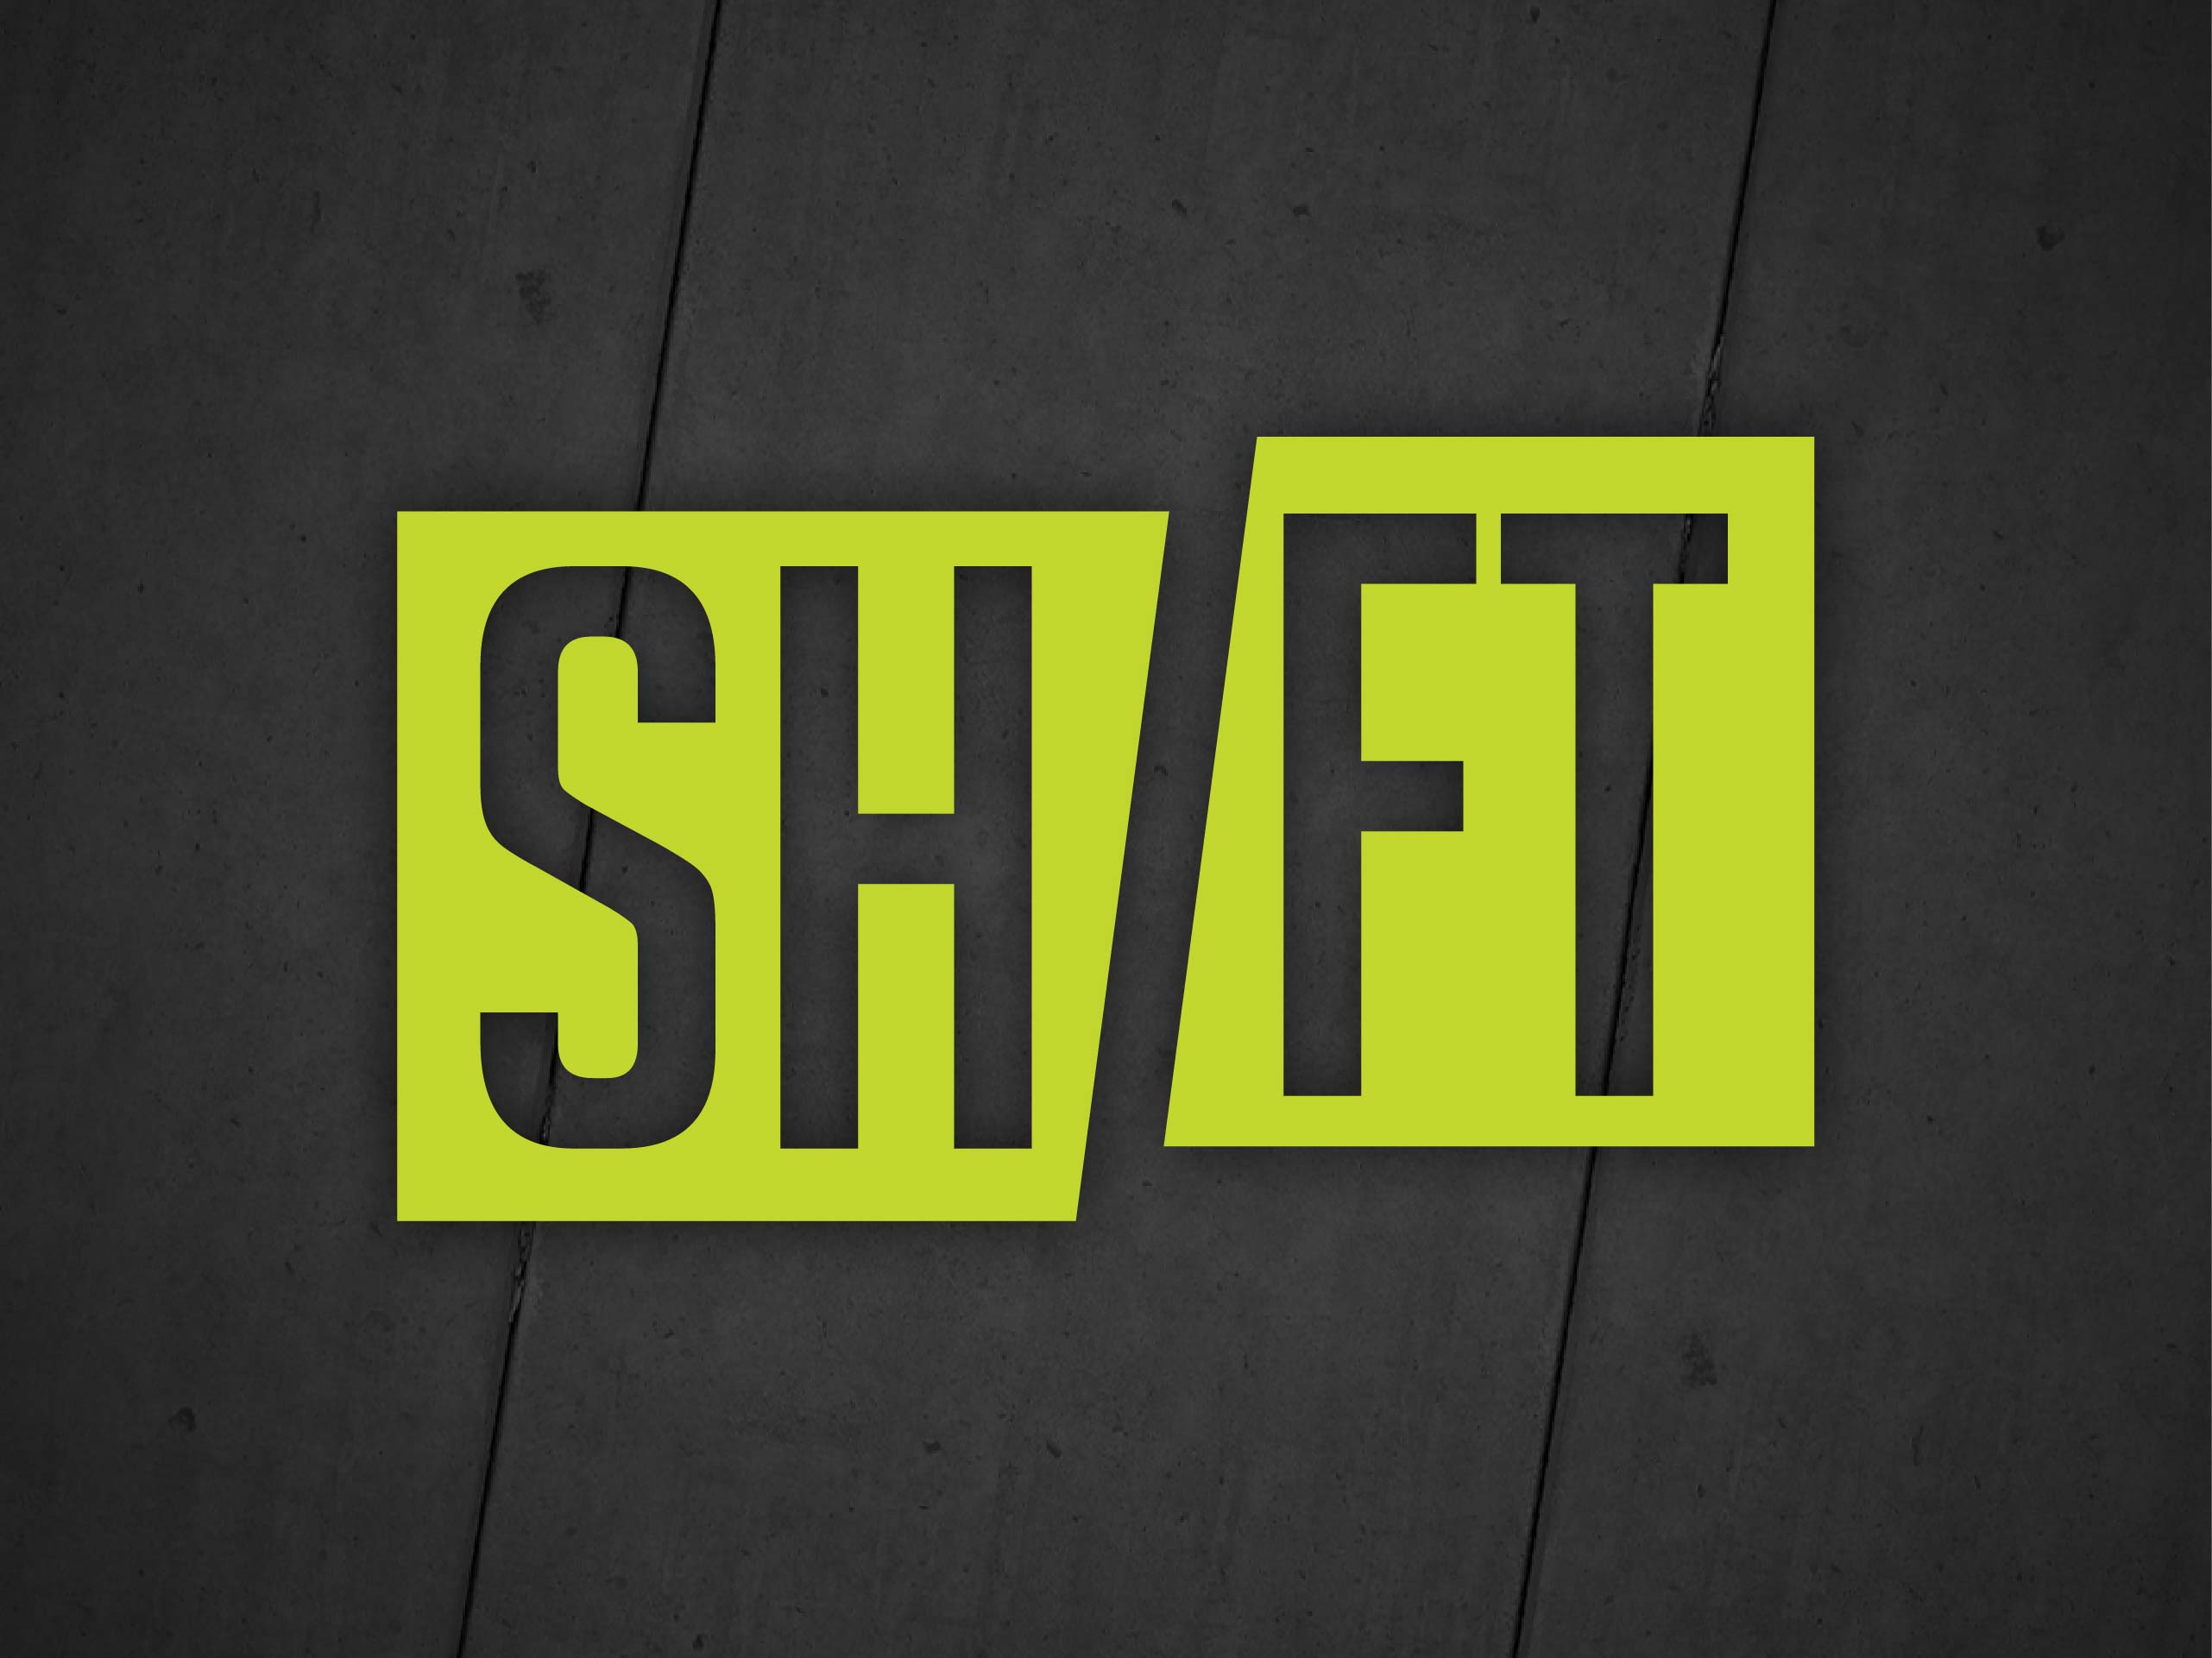 Shift (Part 5)